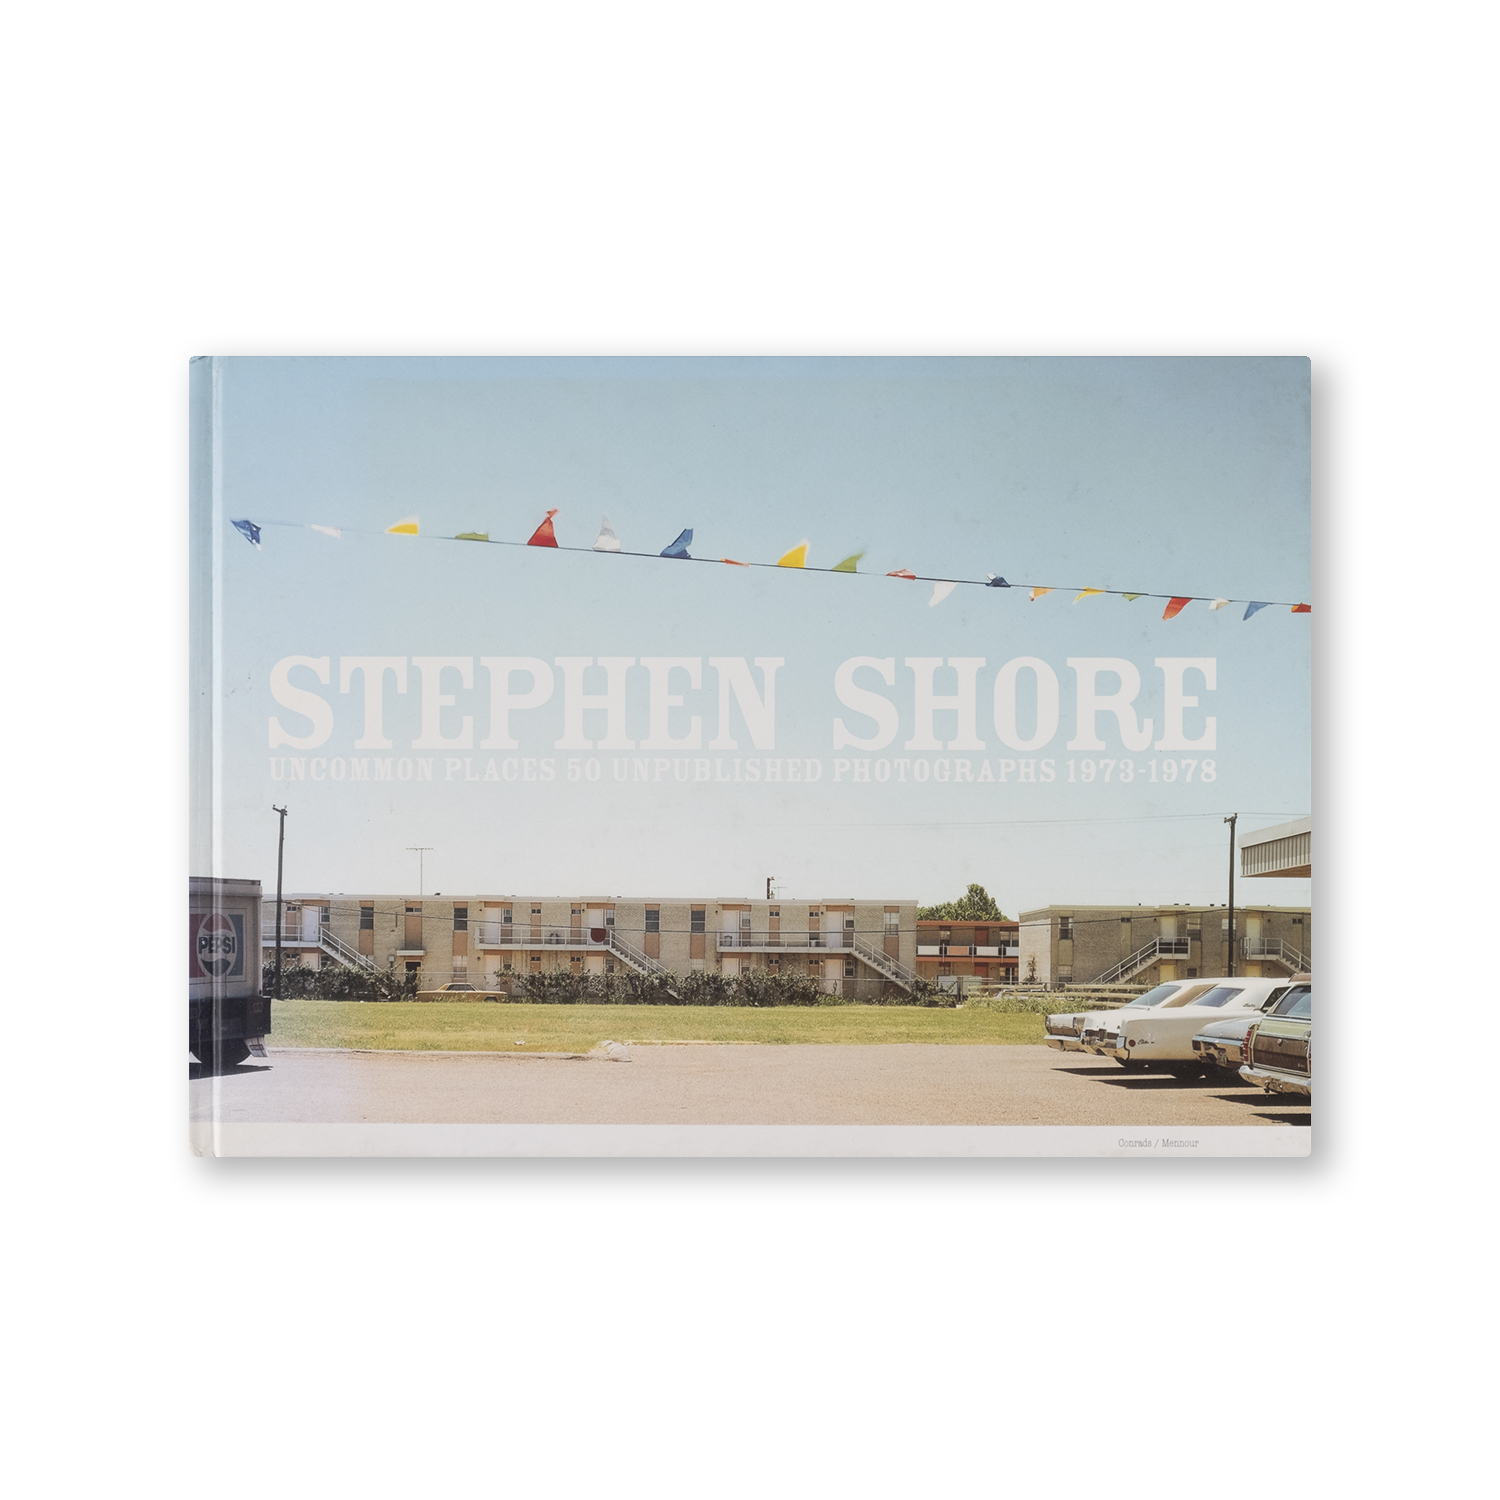 Stephen Shore - Uncommon Places 50 Unpublished Photographs 1973-1978